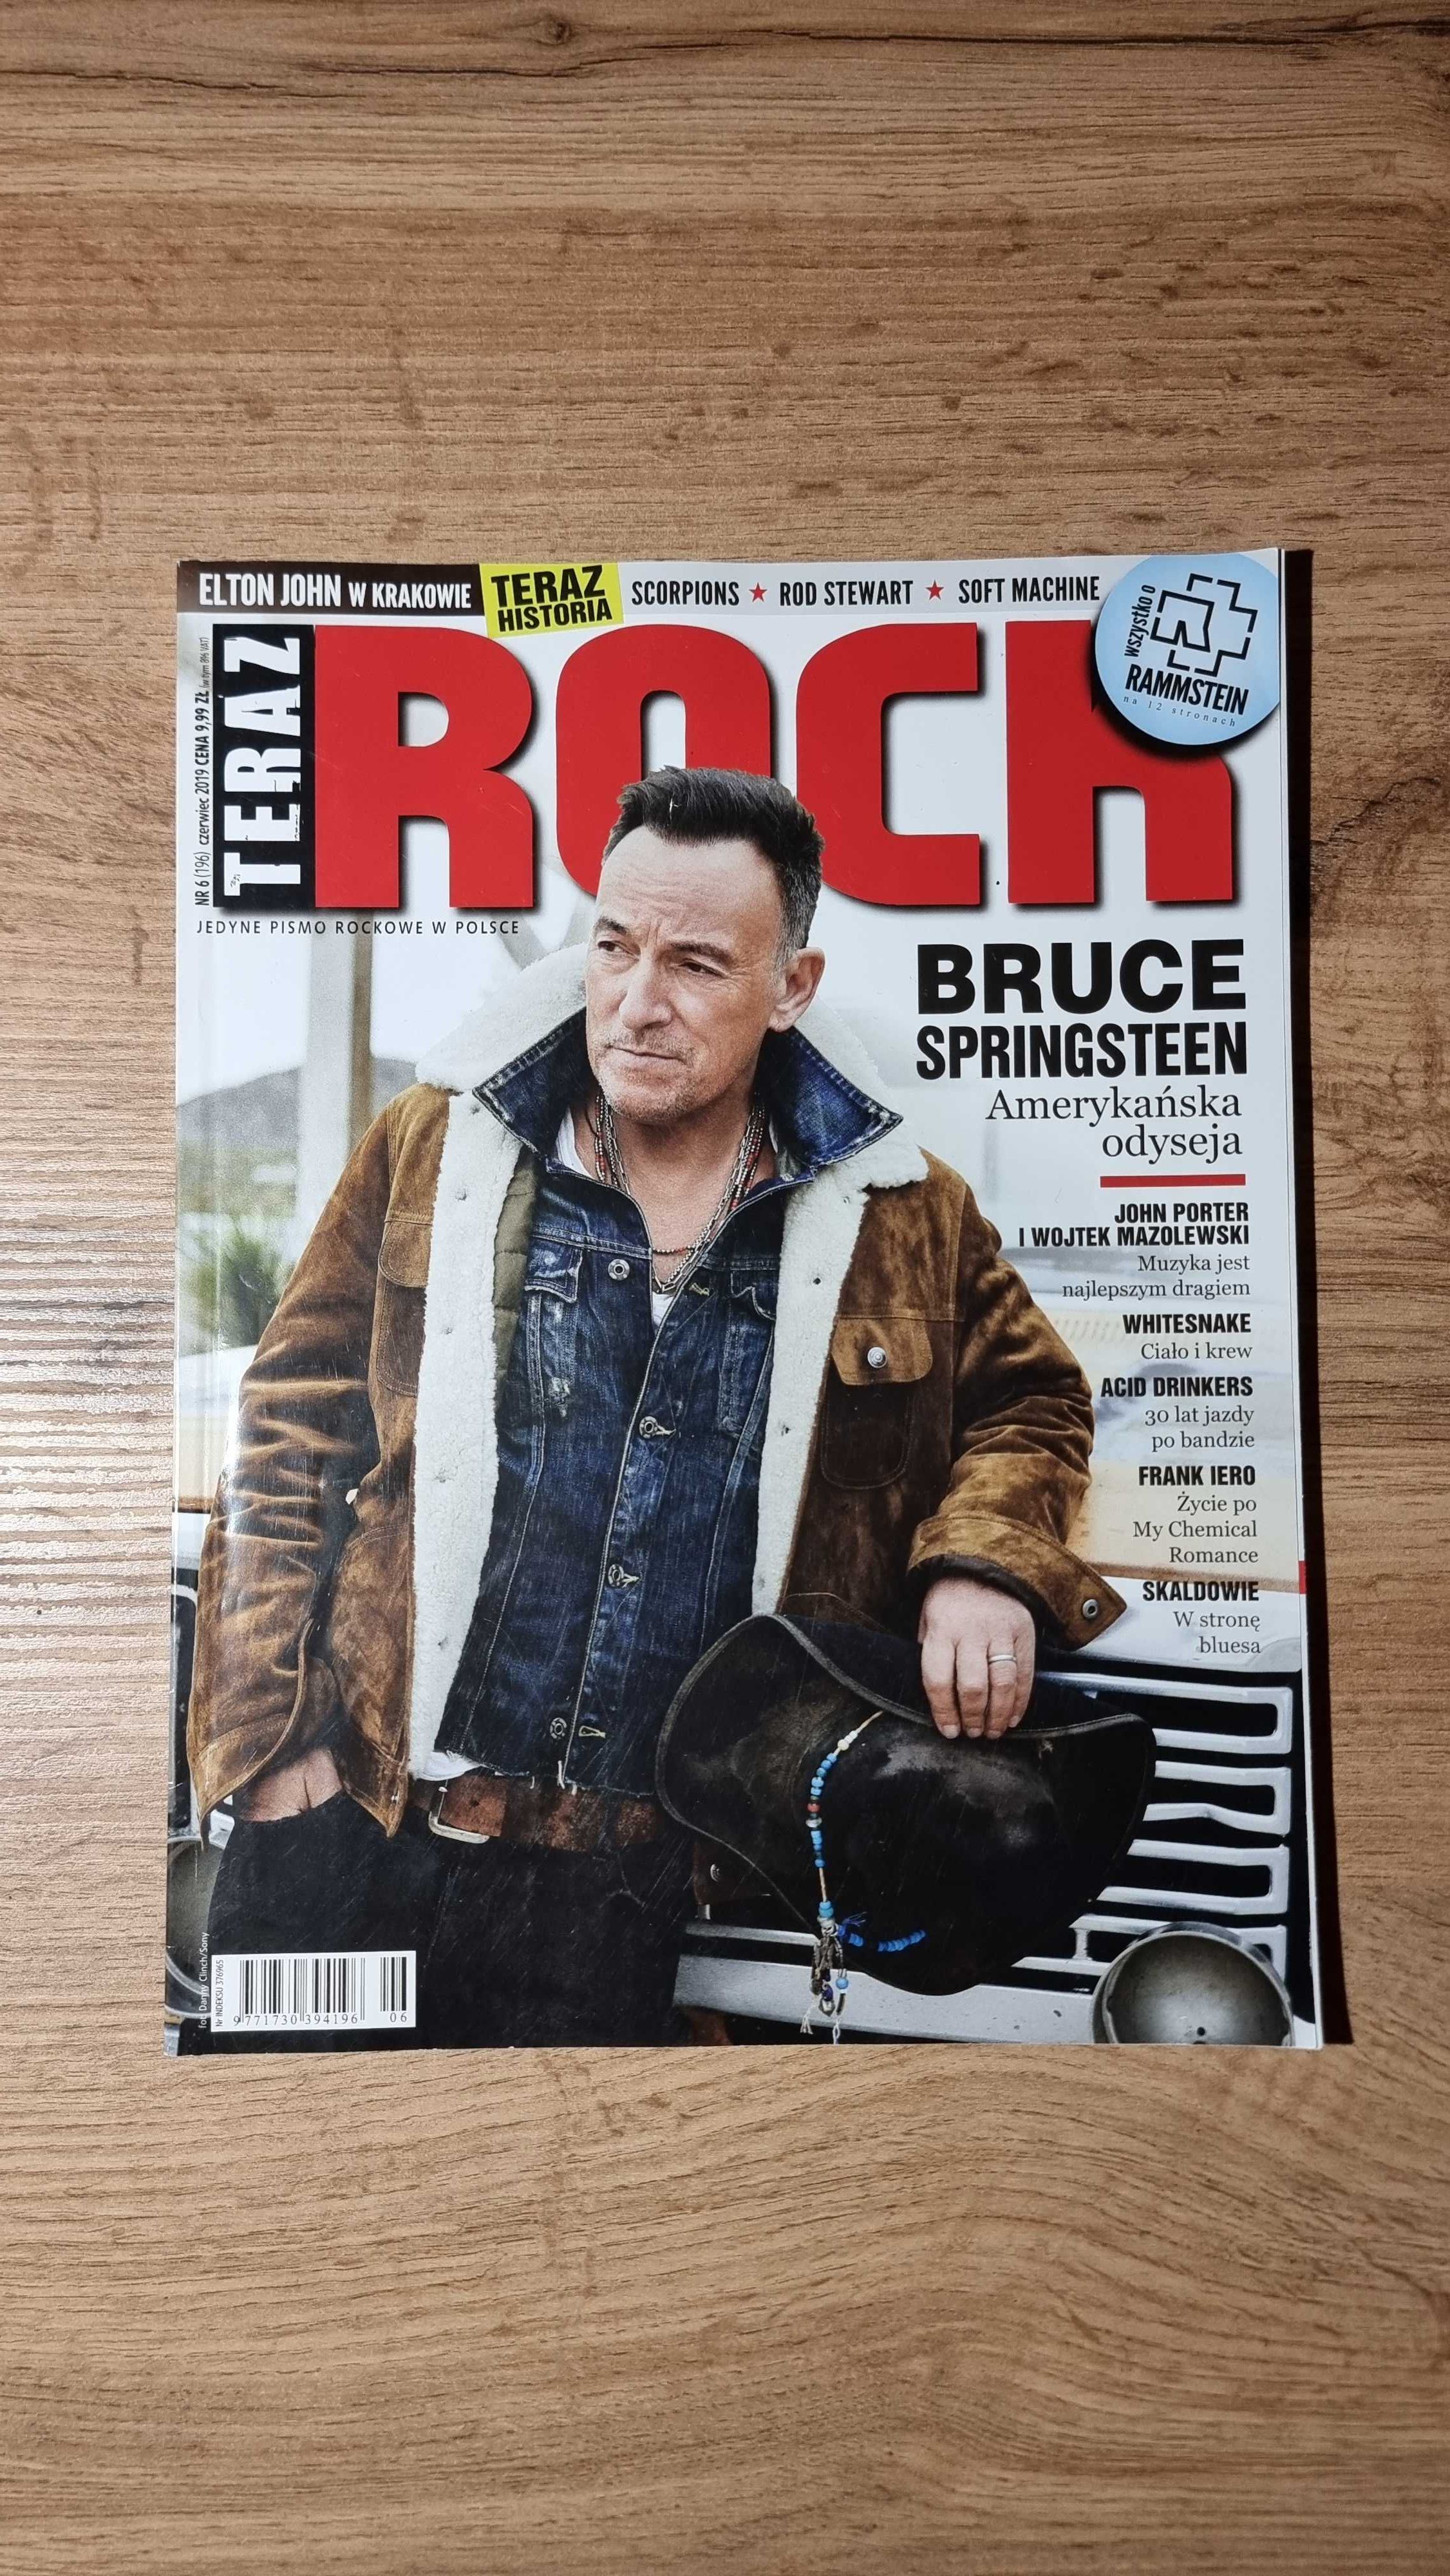 Teraz Rock (196) 6/2019 - Bruce Springsteen, Rammstein, Whitesnake